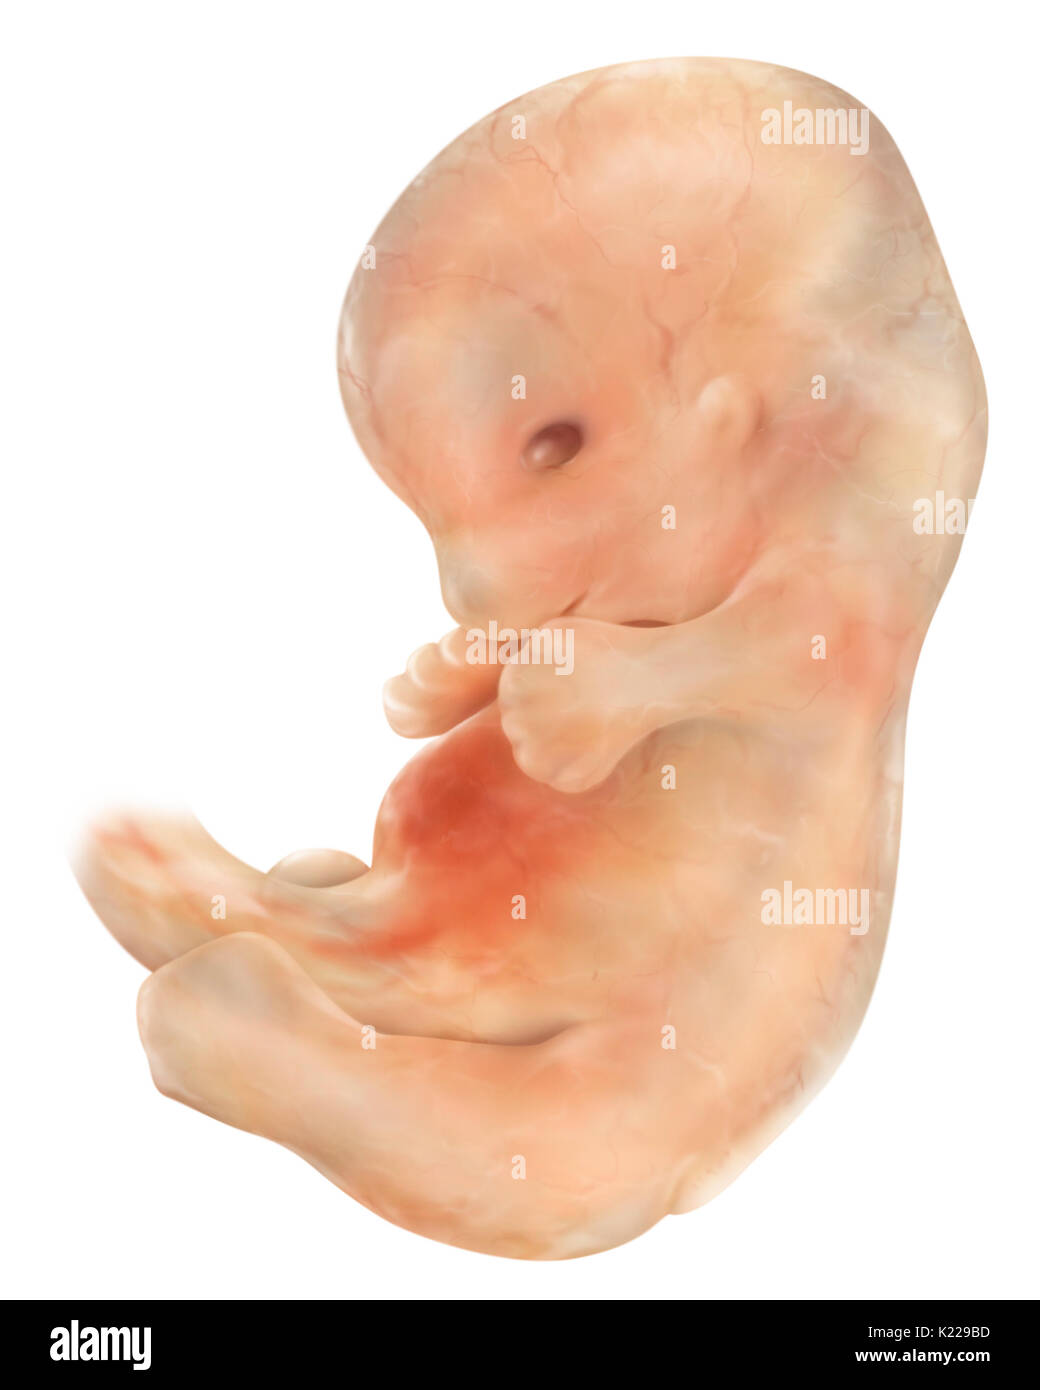 Ein sechs Wochen Embryo misst fast 1⁄2-Zoll (13 mm) und wiegt ca. 1,5 g. Seine Glieder sind bereits differenziert und sein Gesicht beginnt ein menschliches Erscheinungsbild zu haben. Stockfoto